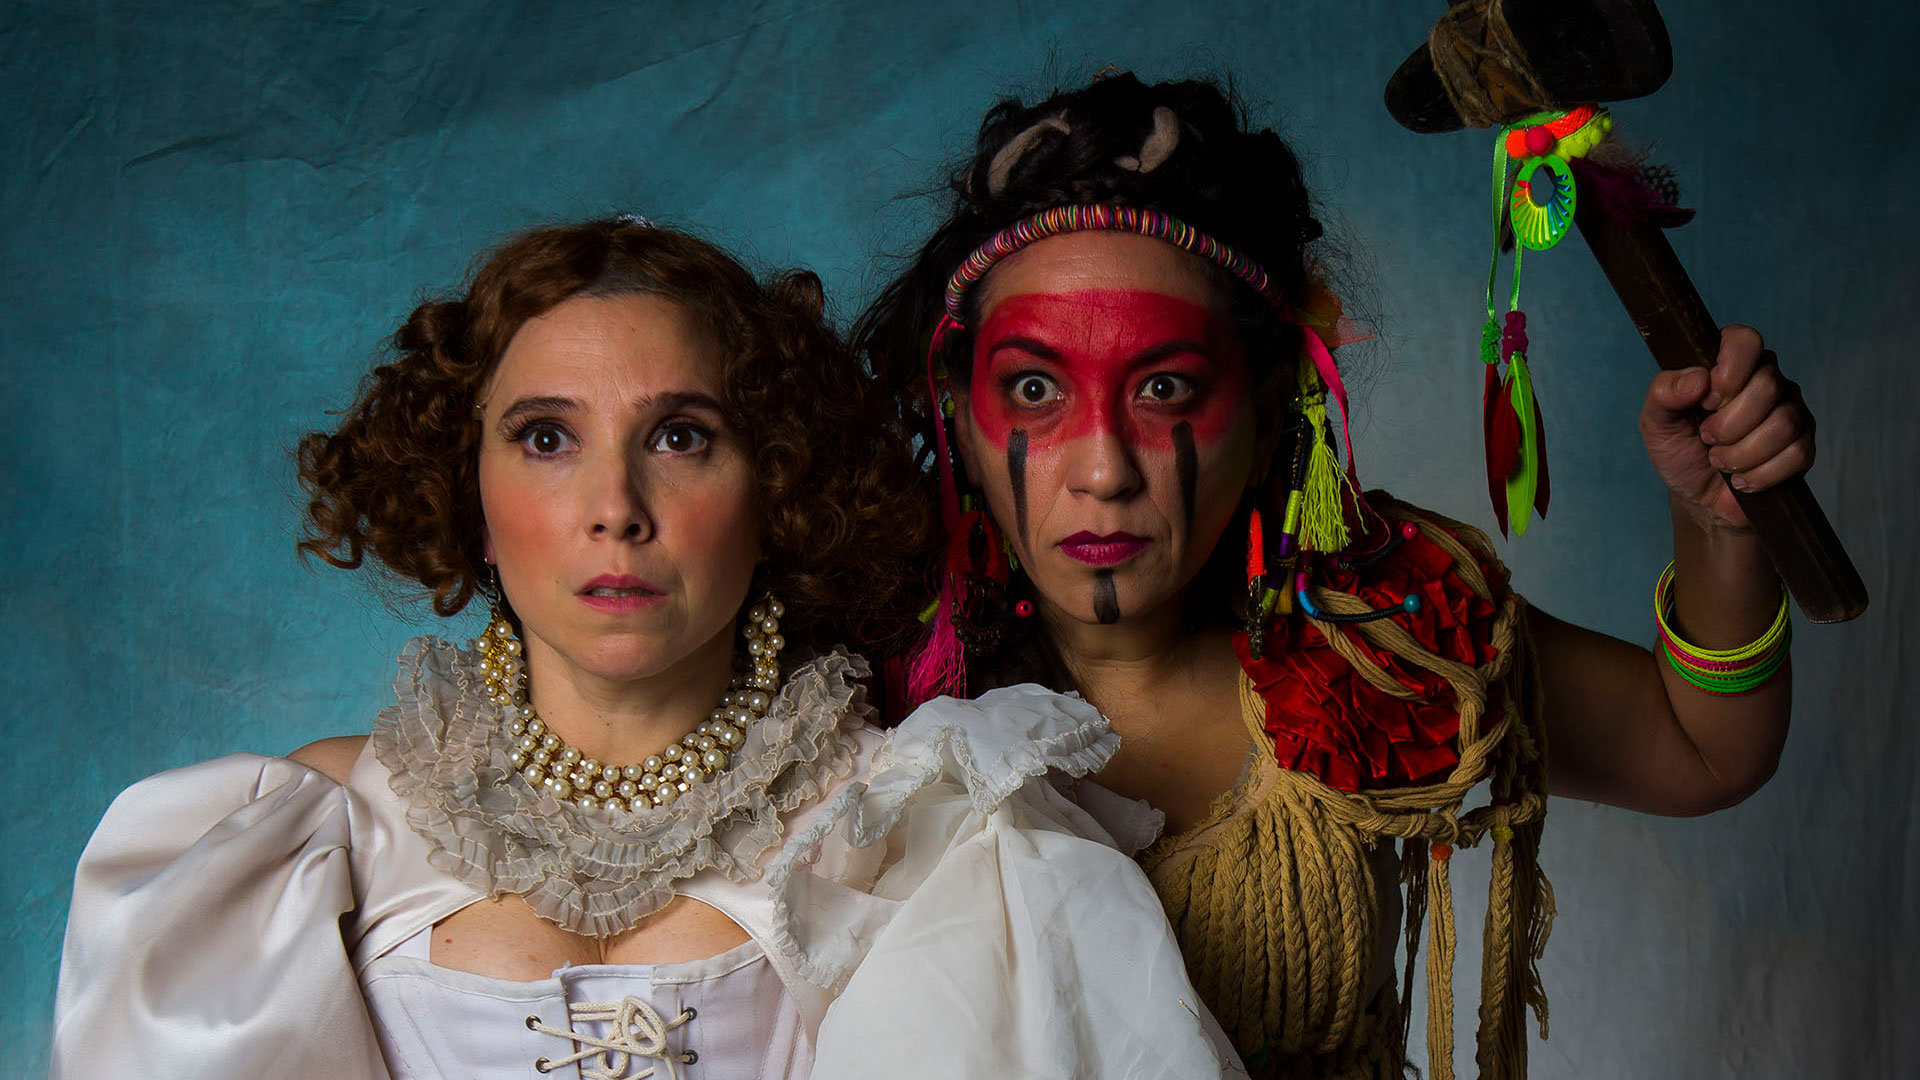 Laura Paredes y Lorena Vega en "Las cautivas", una obra de Mariano Tenconi Blanco